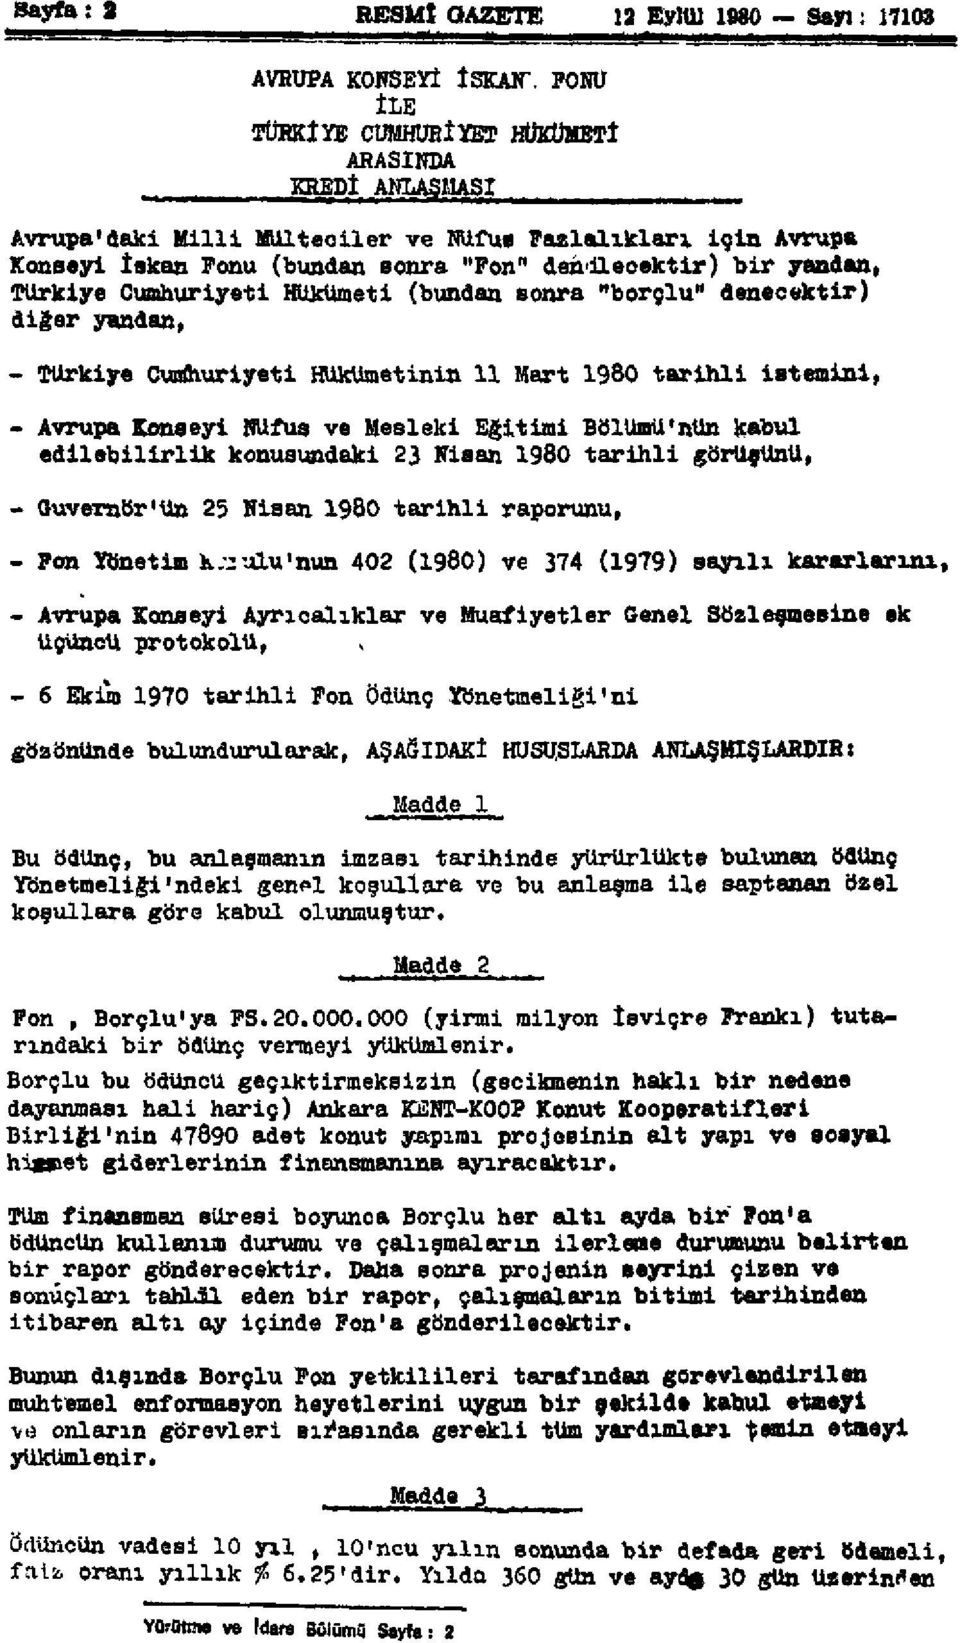 Cumhuriyeti Hükümeti (bundan sonra "borçlu" denecektir) diğer yandan, - Türkiye Cumhuriyeti Hükümetinin 11 Mart 1980 tarihli istemini, - Avrupa Konseyi Nüfus ve Mesleki Eğitimi Bölümü'nün kabul